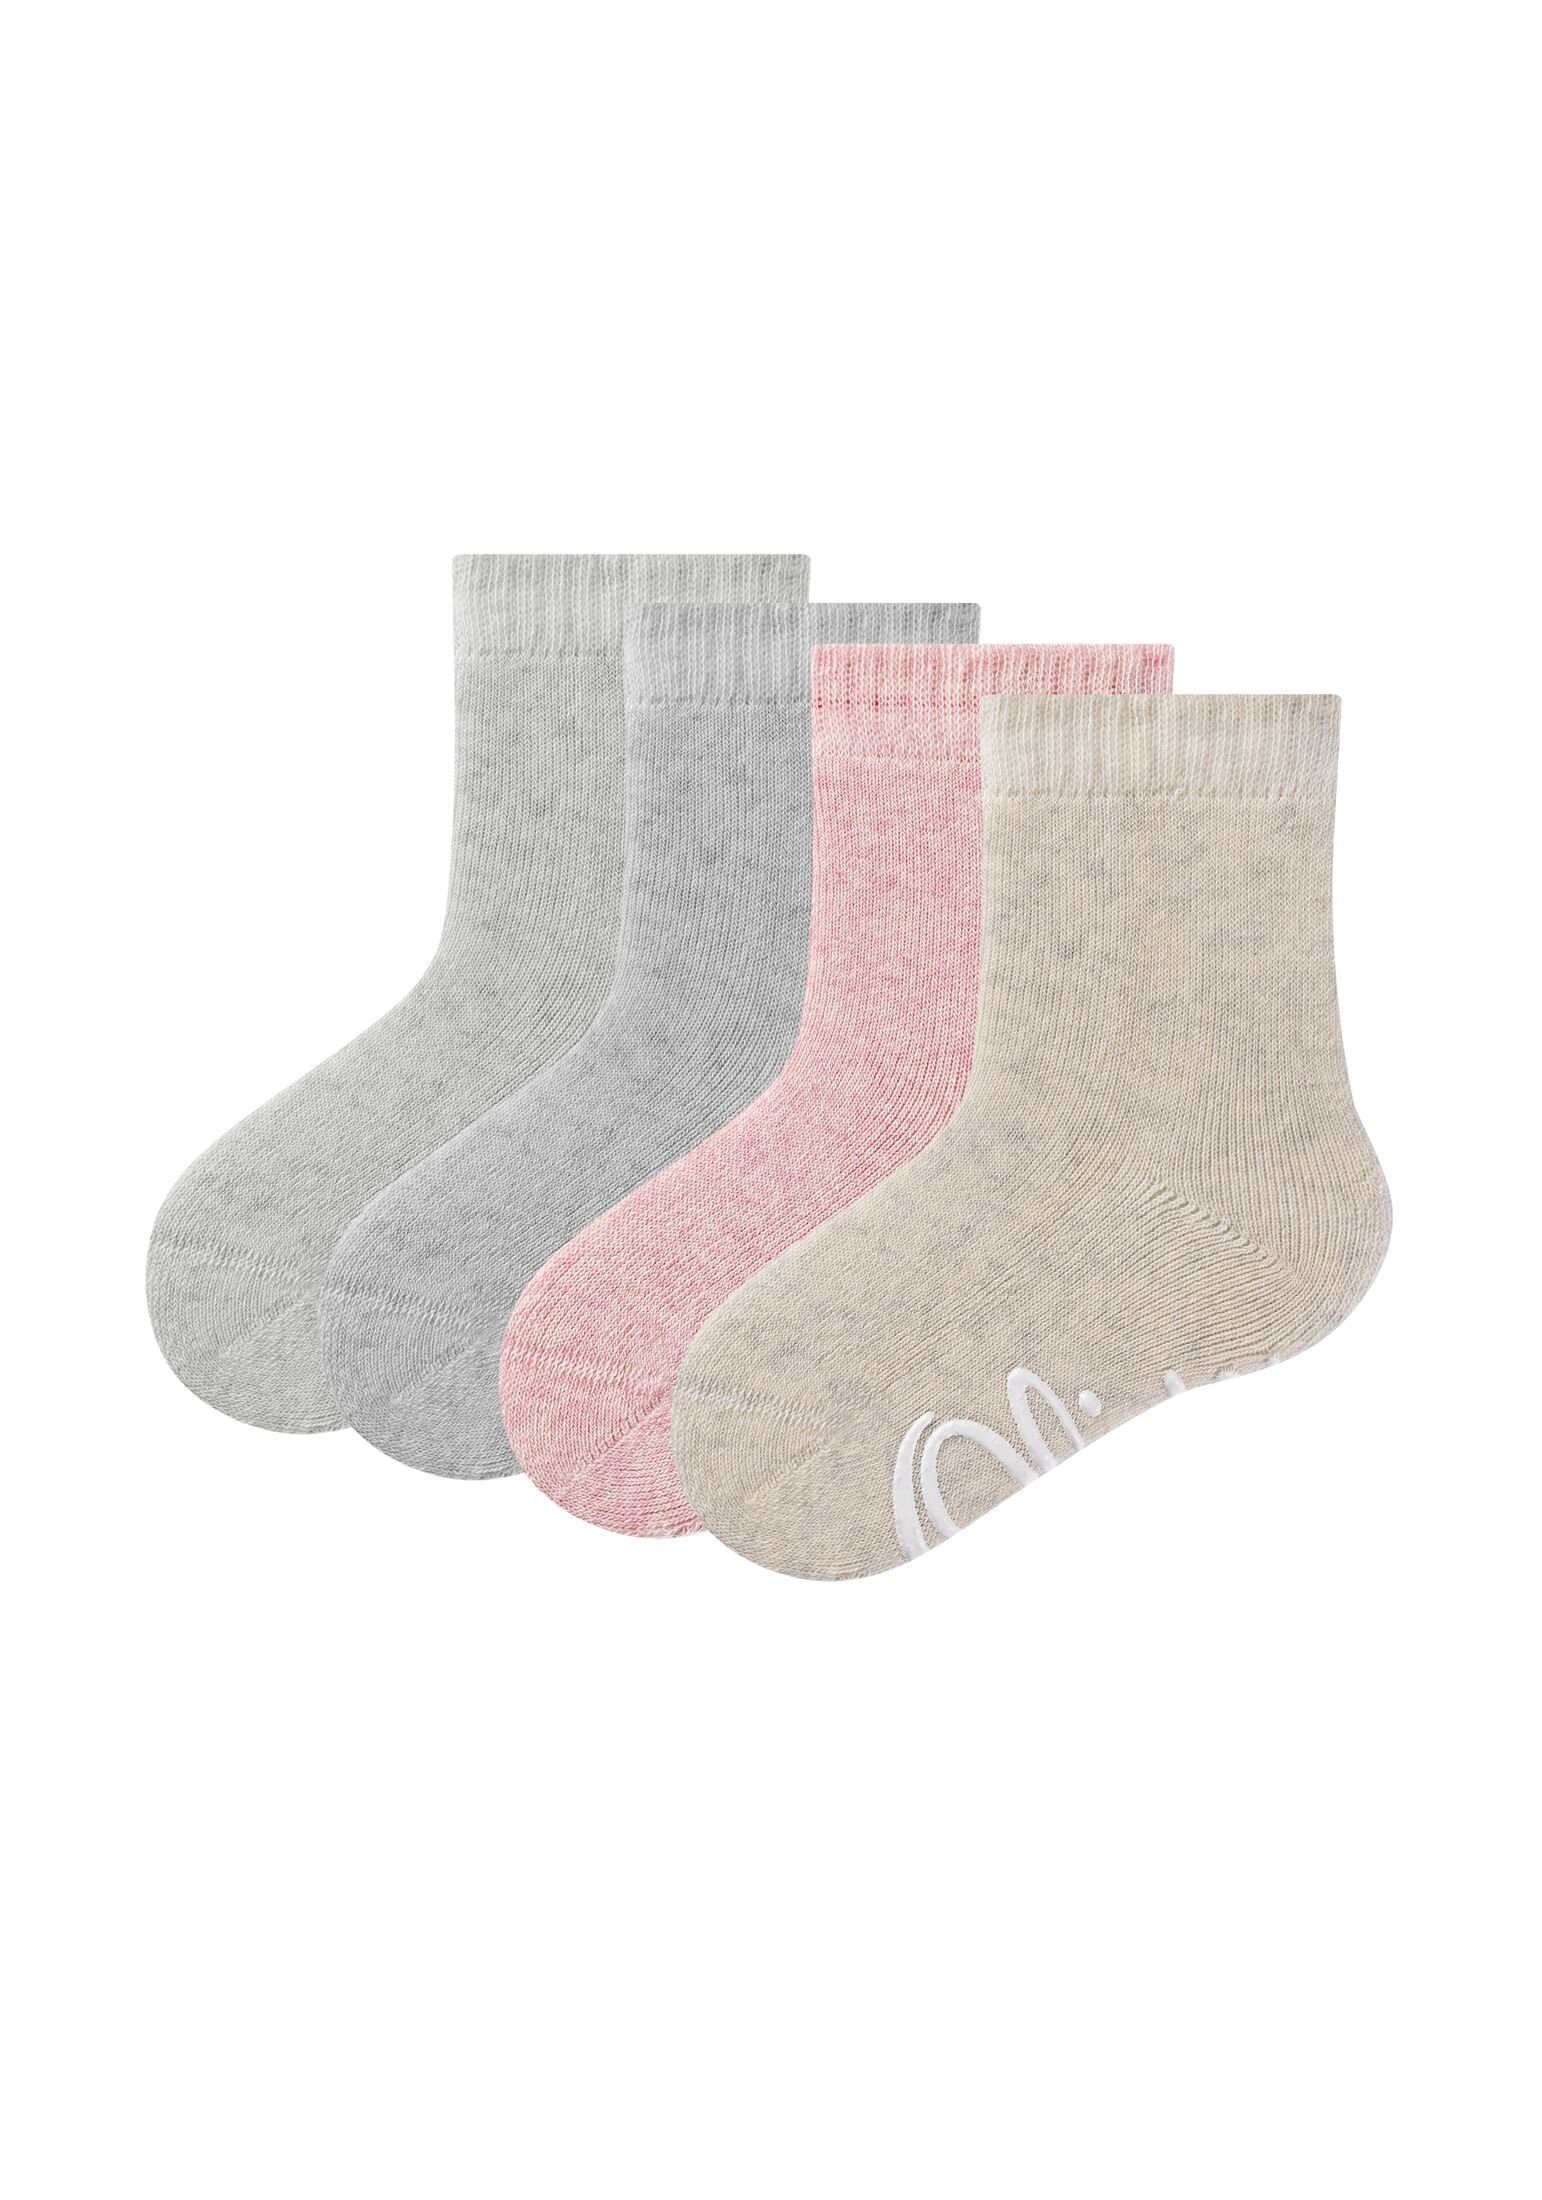 s.Oliver Socken Socken 4er Pack, Tolle Socken im 4er Set von s.Oliver für  Kinder | Lange Socken